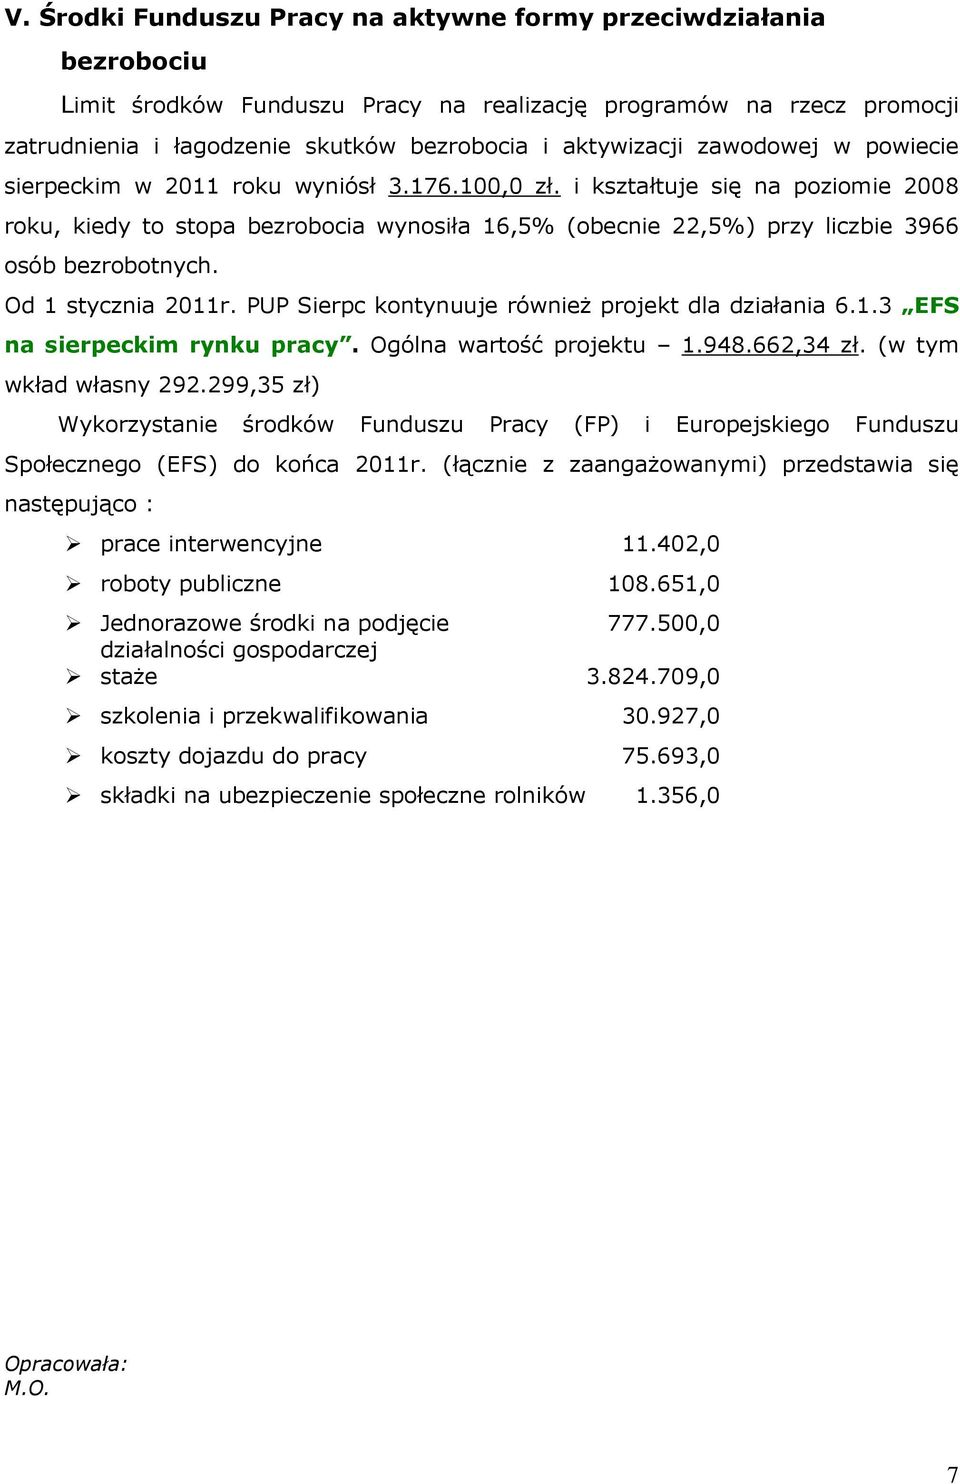 Od 1 stycznia 2011r. PUP Sierpc kontynuuje również projekt dla działania 6.1.3 EFS na sierpeckim rynku pracy. Ogólna wartość projektu 1.948.662,34 zł. (w tym wkład własny 292.